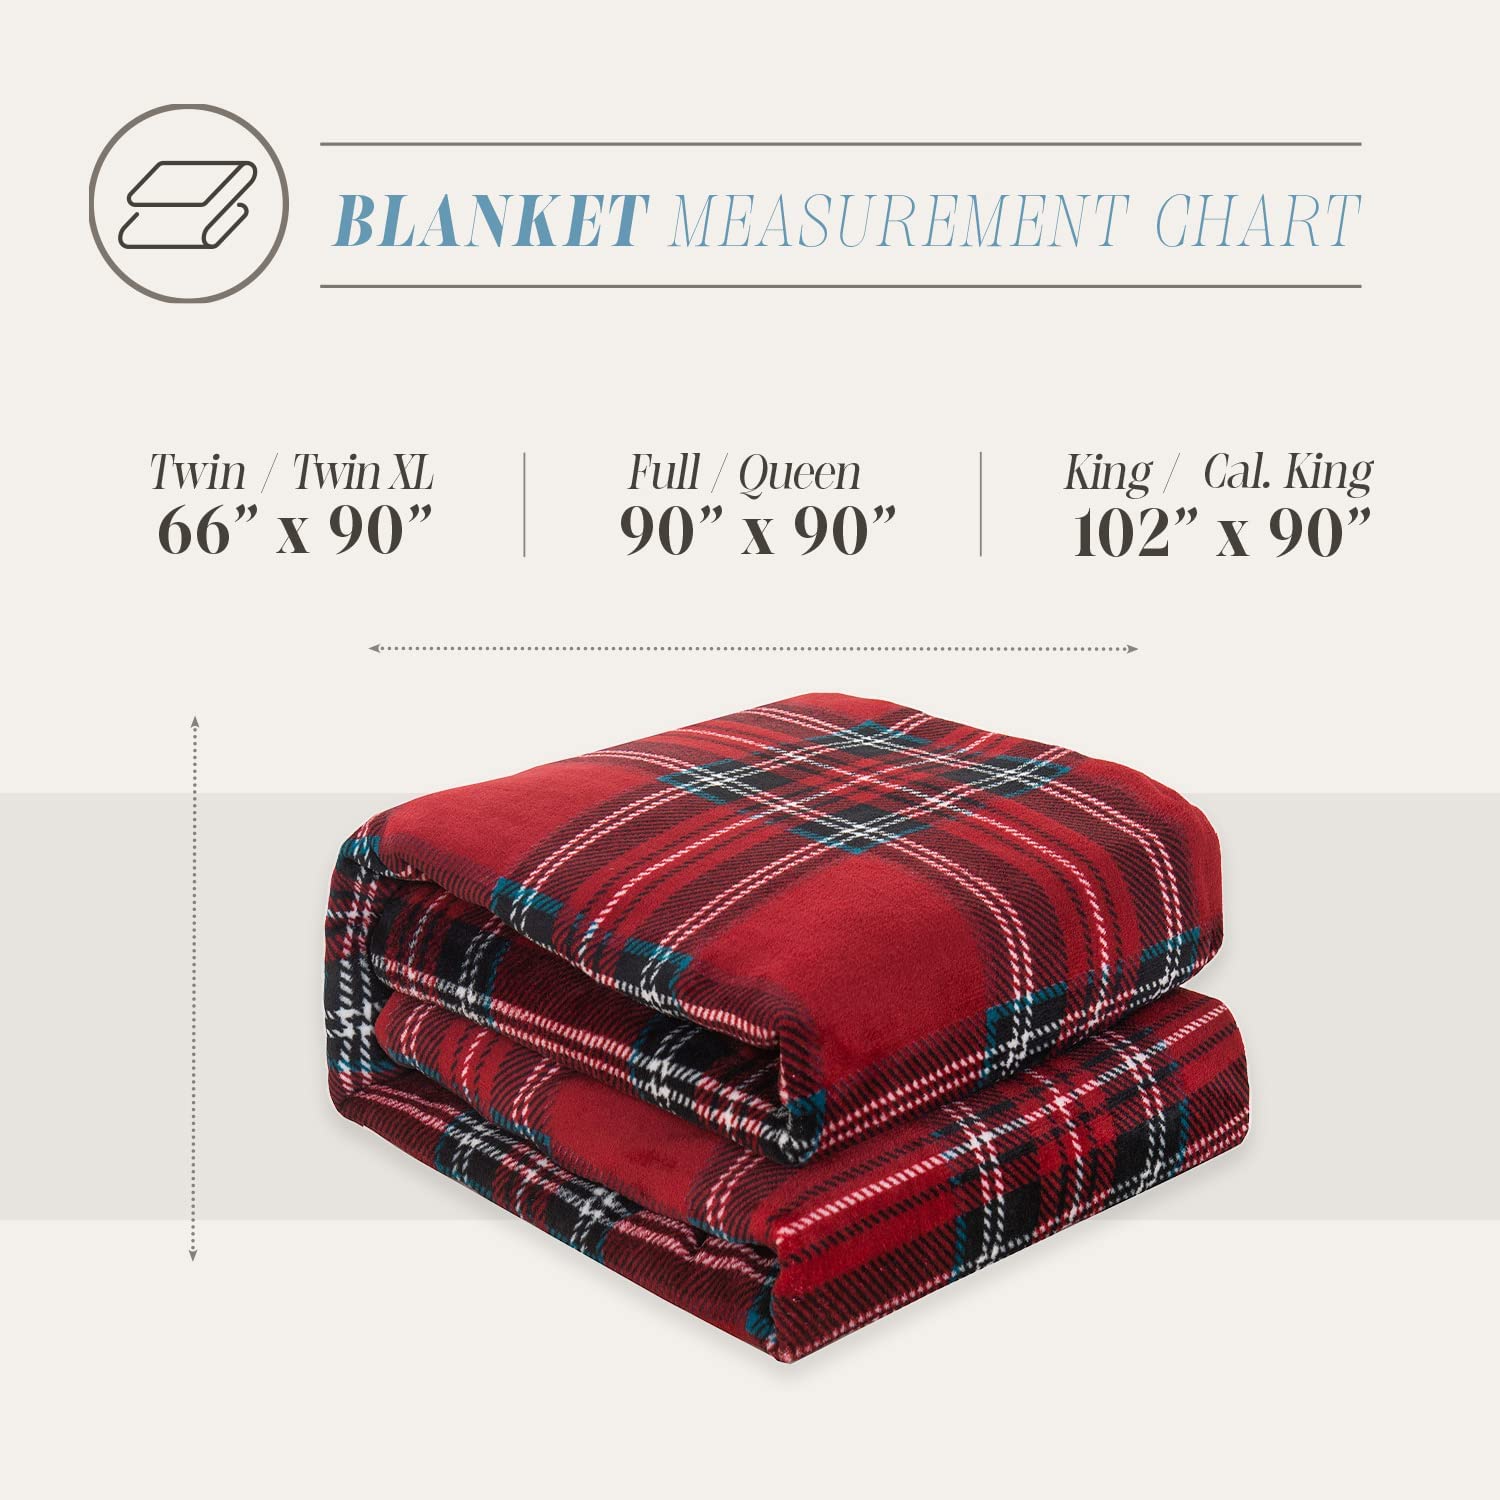 Luxury Velvety Feel Blanket, All-Season & Lightweight Material, Ultra ...